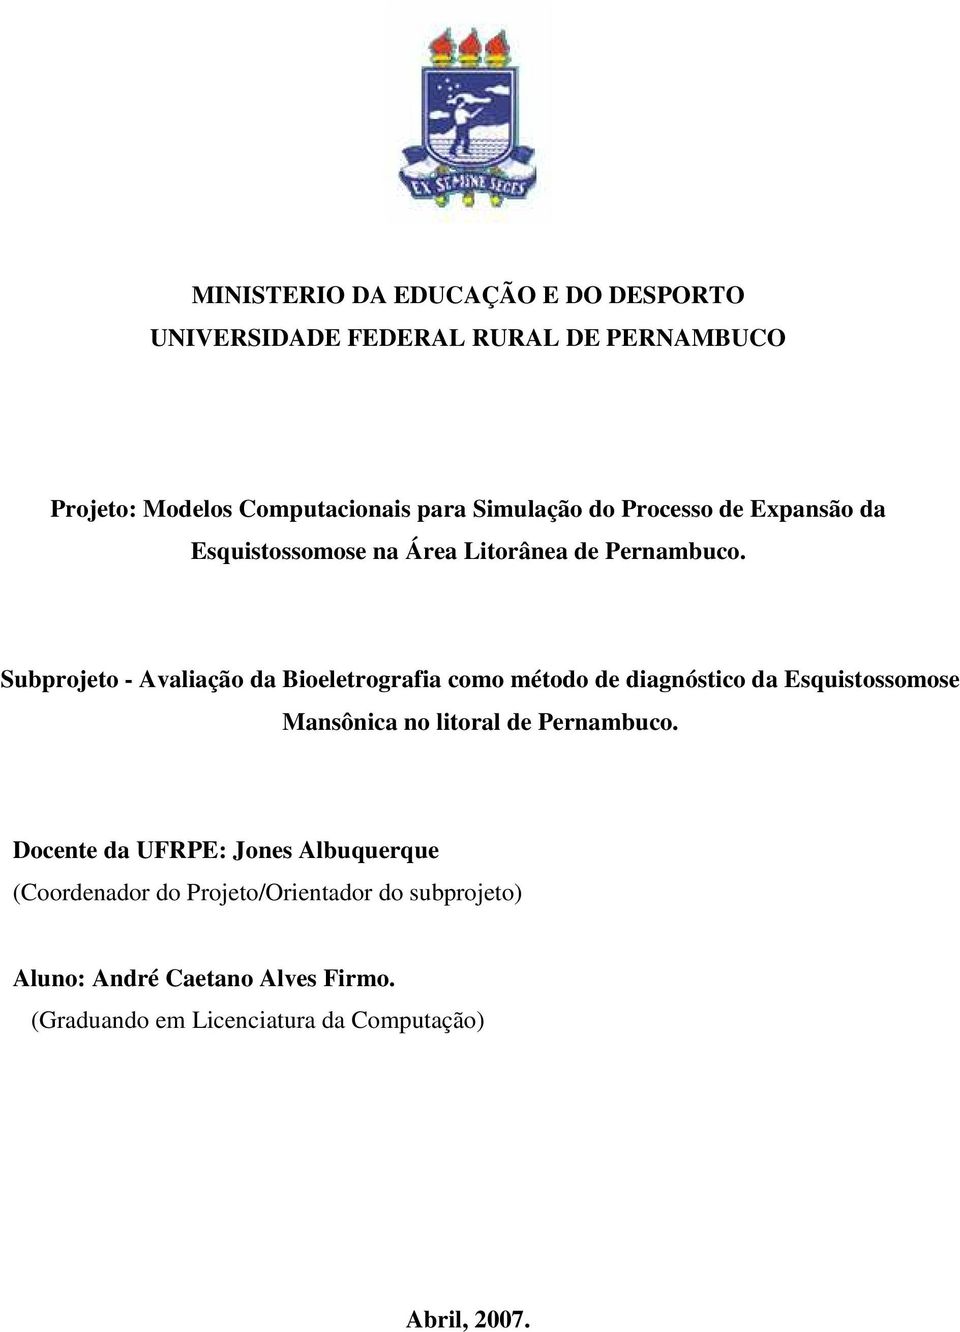 Subprojeto - Avaliação da Bioeletrografia como método de diagnóstico da Esquistossomose Mansônica no litoral de Pernambuco.